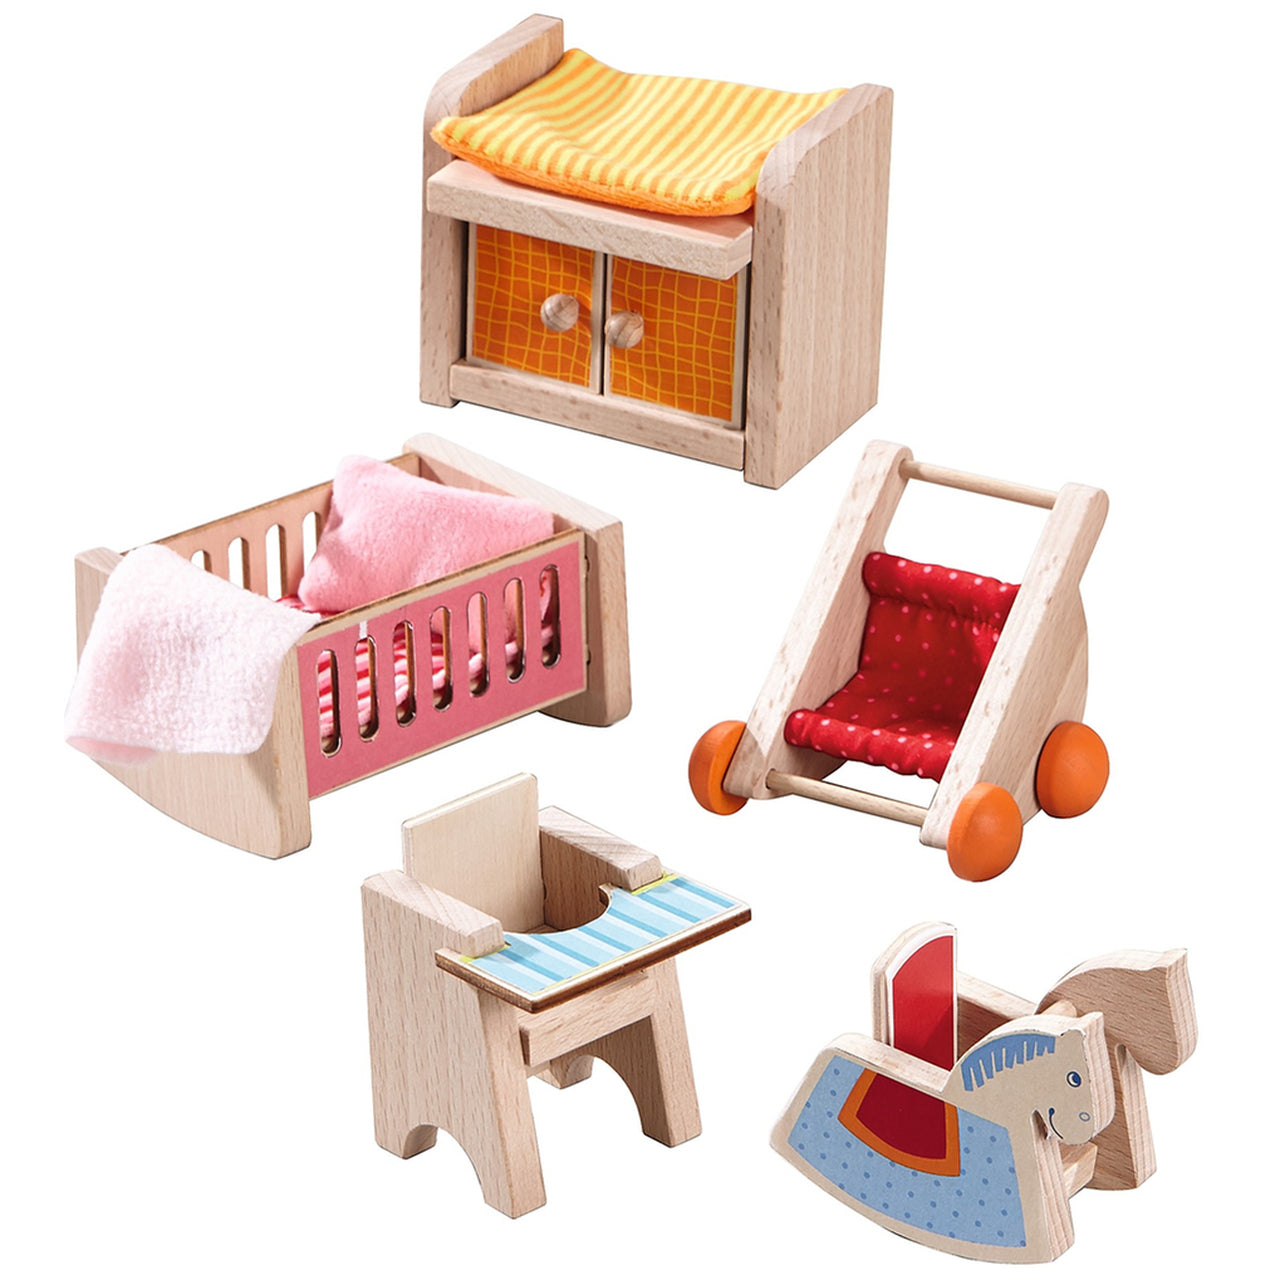 Little Friends Baby's Room Nursery Set